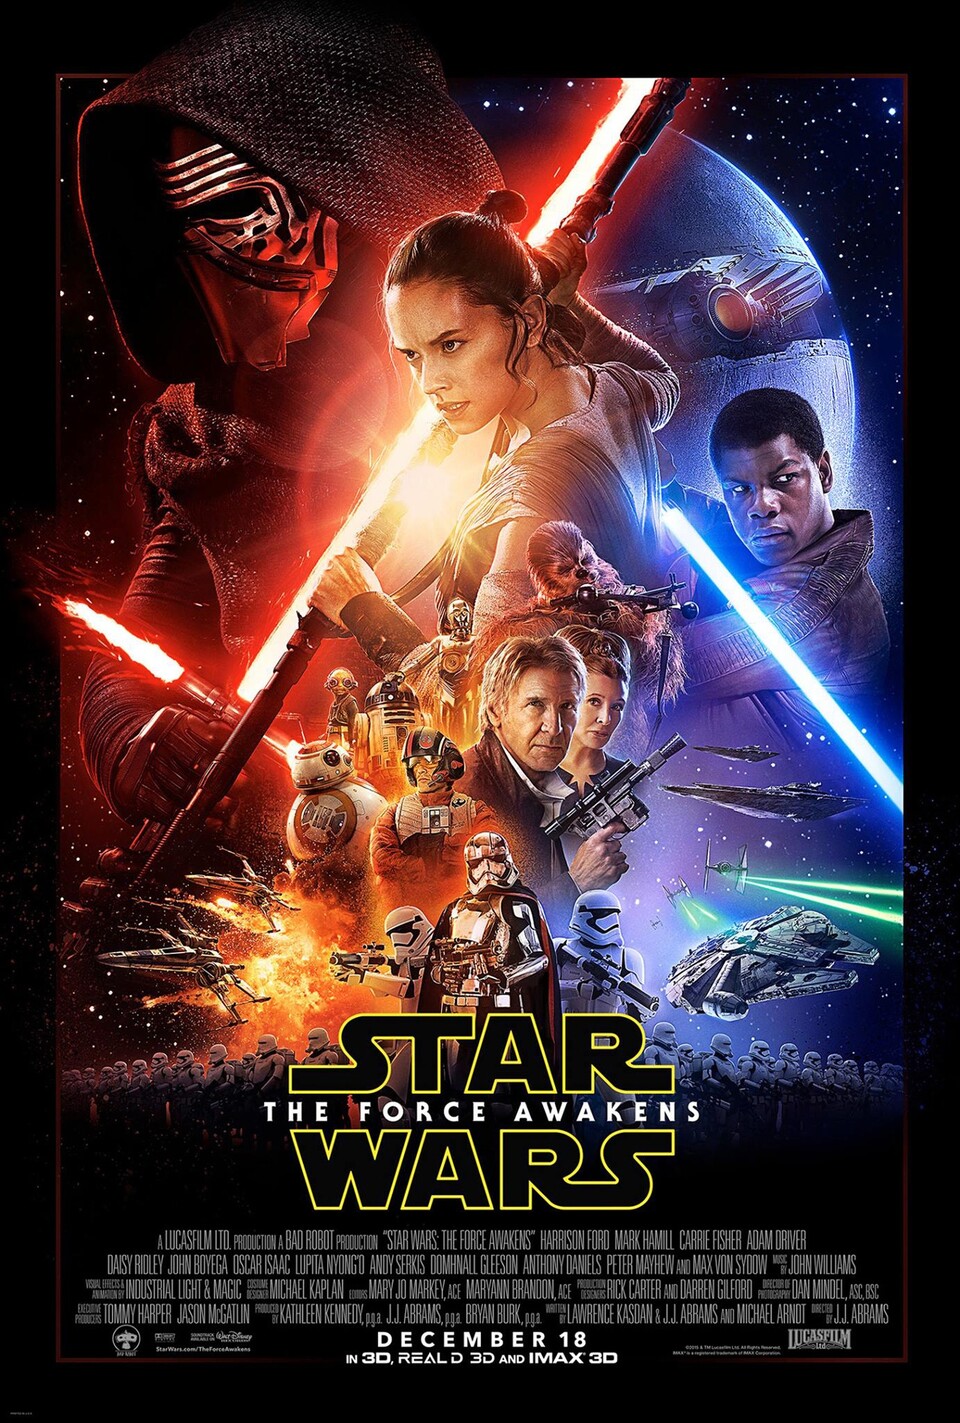 Das offizielle Kinoposter zum neuen Star-Wars-Film. Jedoch scheint Mark Hamill als Luke Skywalker darauf zu fehlen.